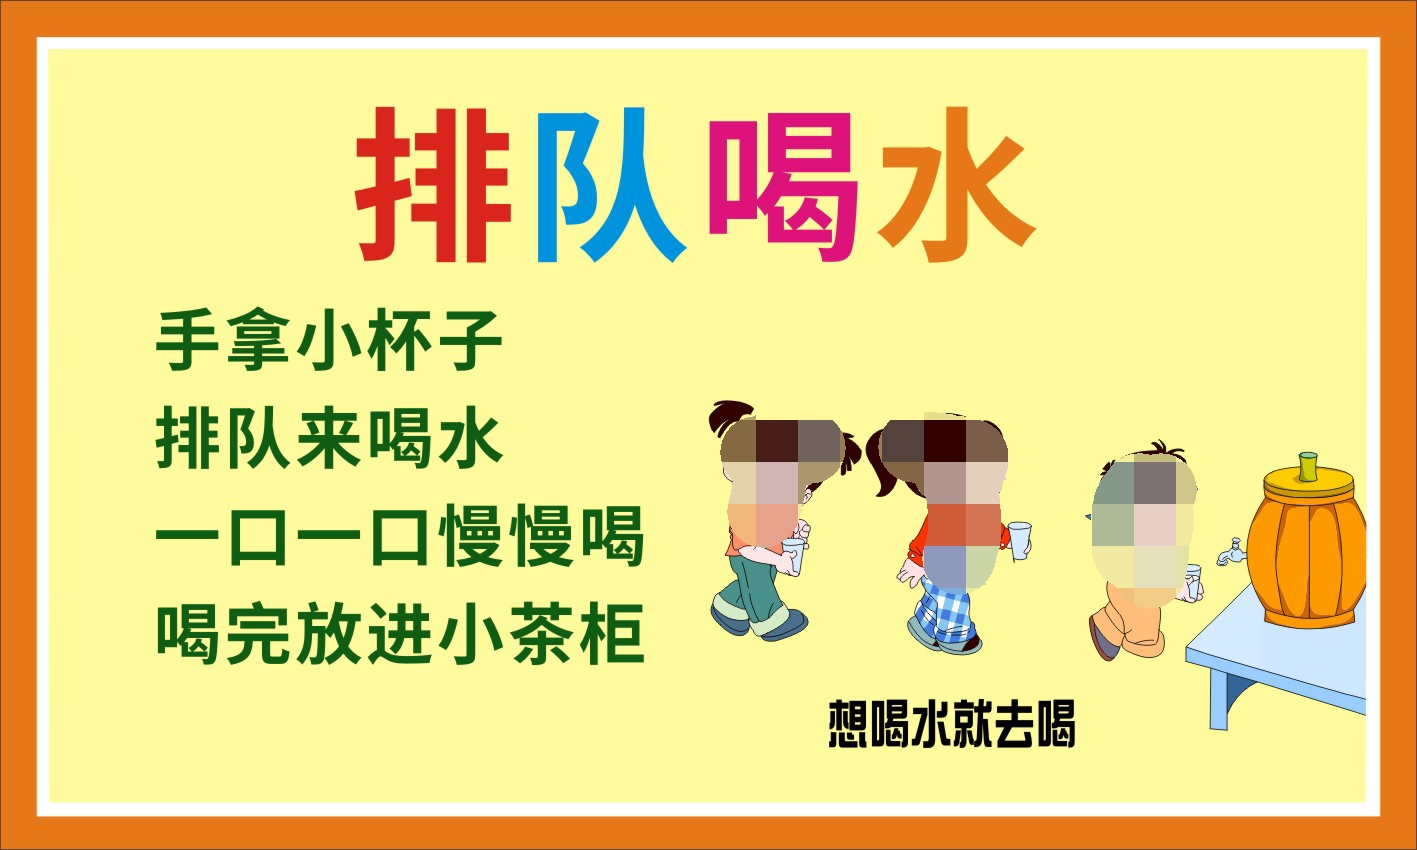 M768幼儿园小朋友宝宝排队喝水处温馨提示牌2458海报印制展板喷绘